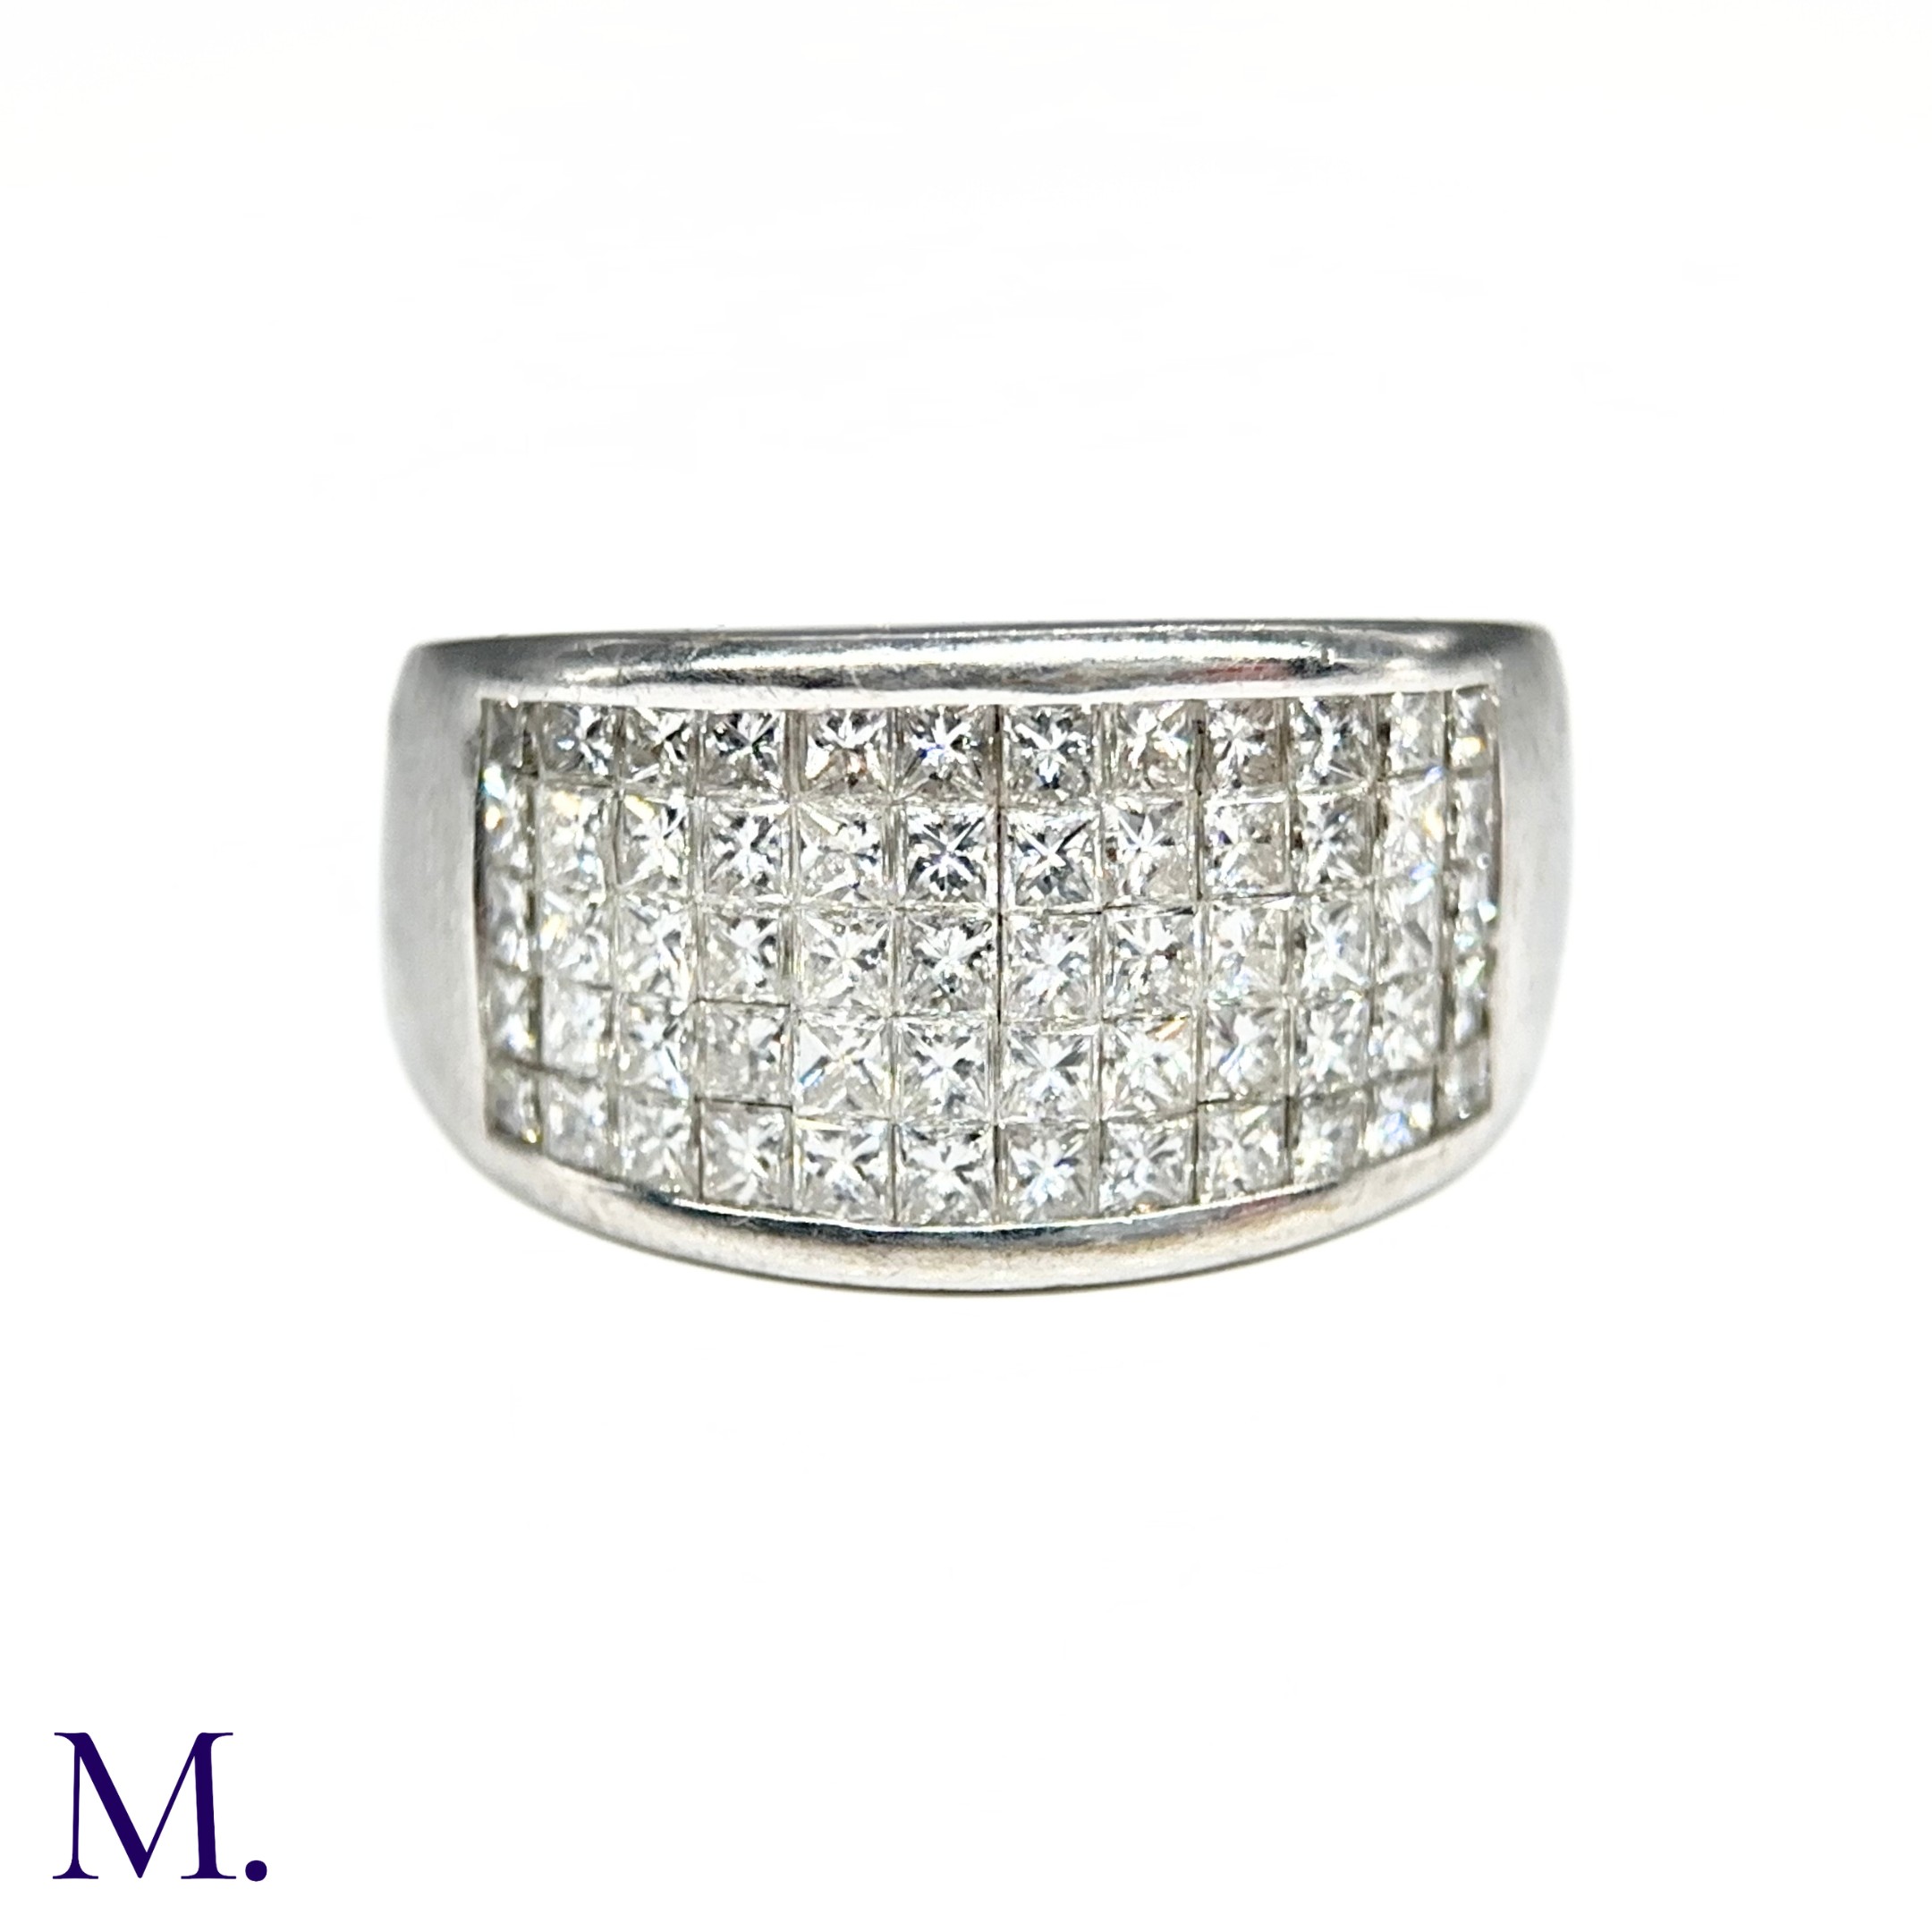 An 5-Row Asscher-cut Diamond Ring - Image 5 of 7